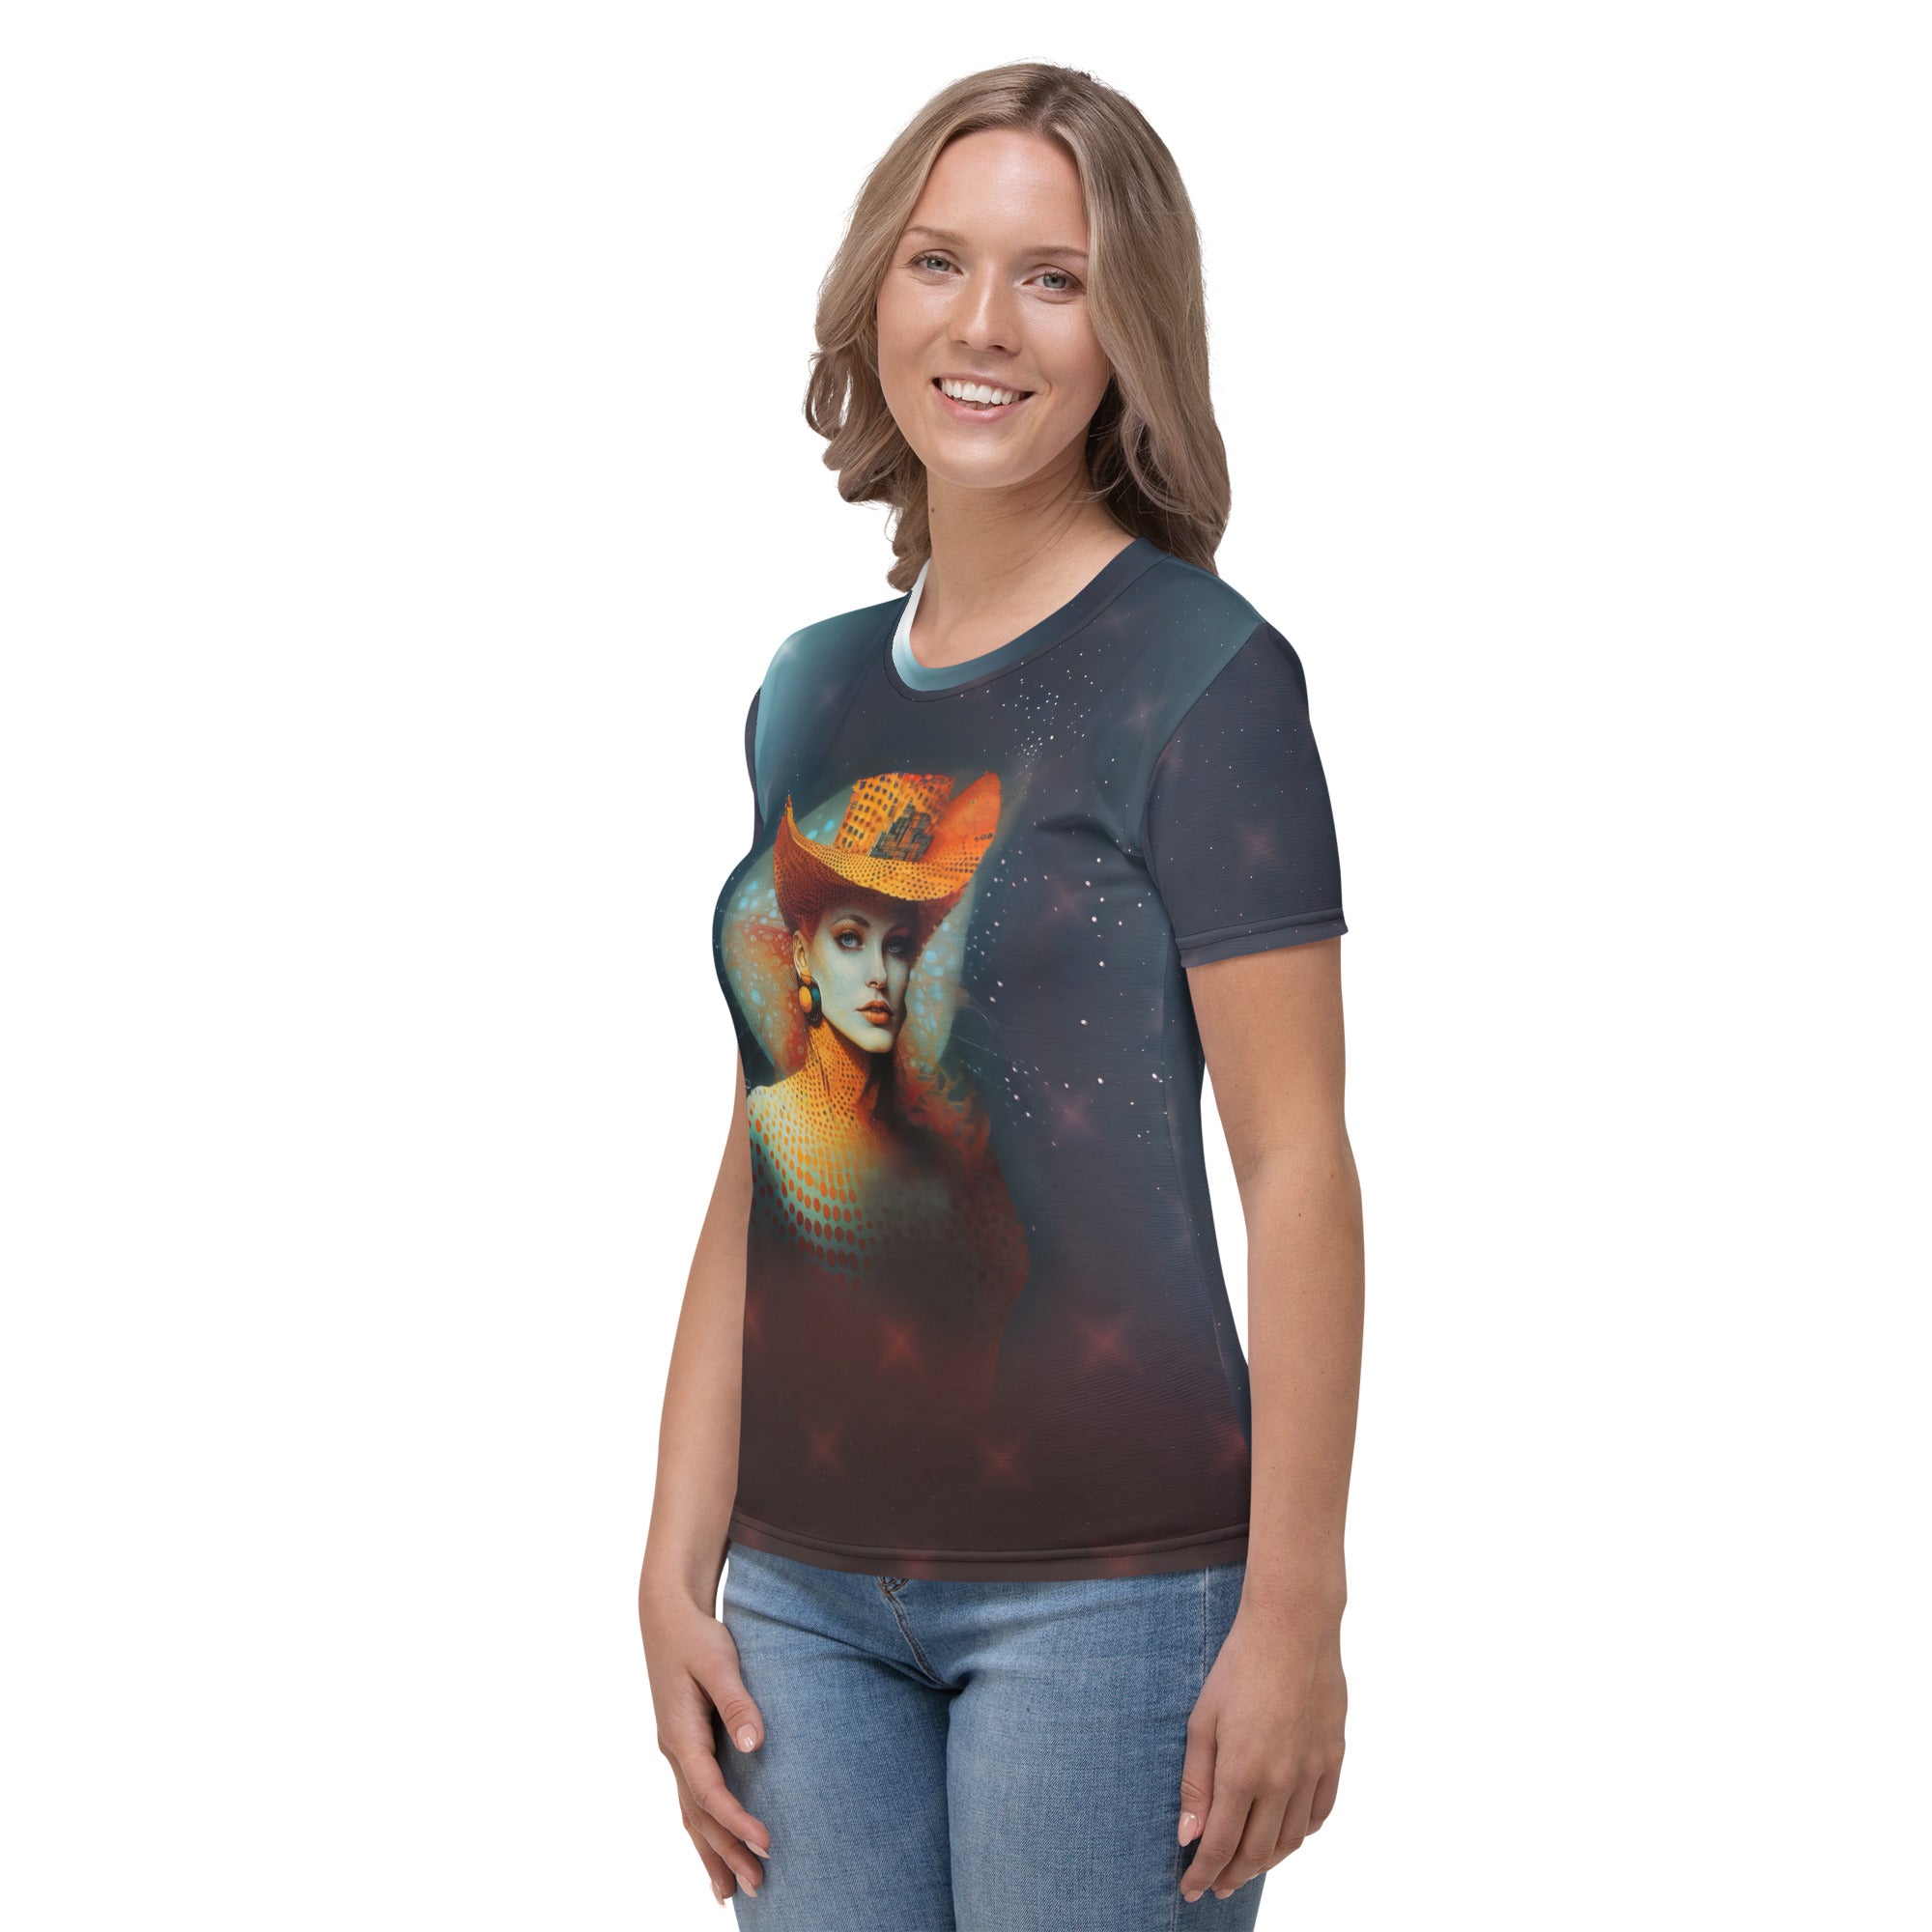 Galactic Fusion Women's Crew Neck T-Shirt - Model Wearing the Shirt